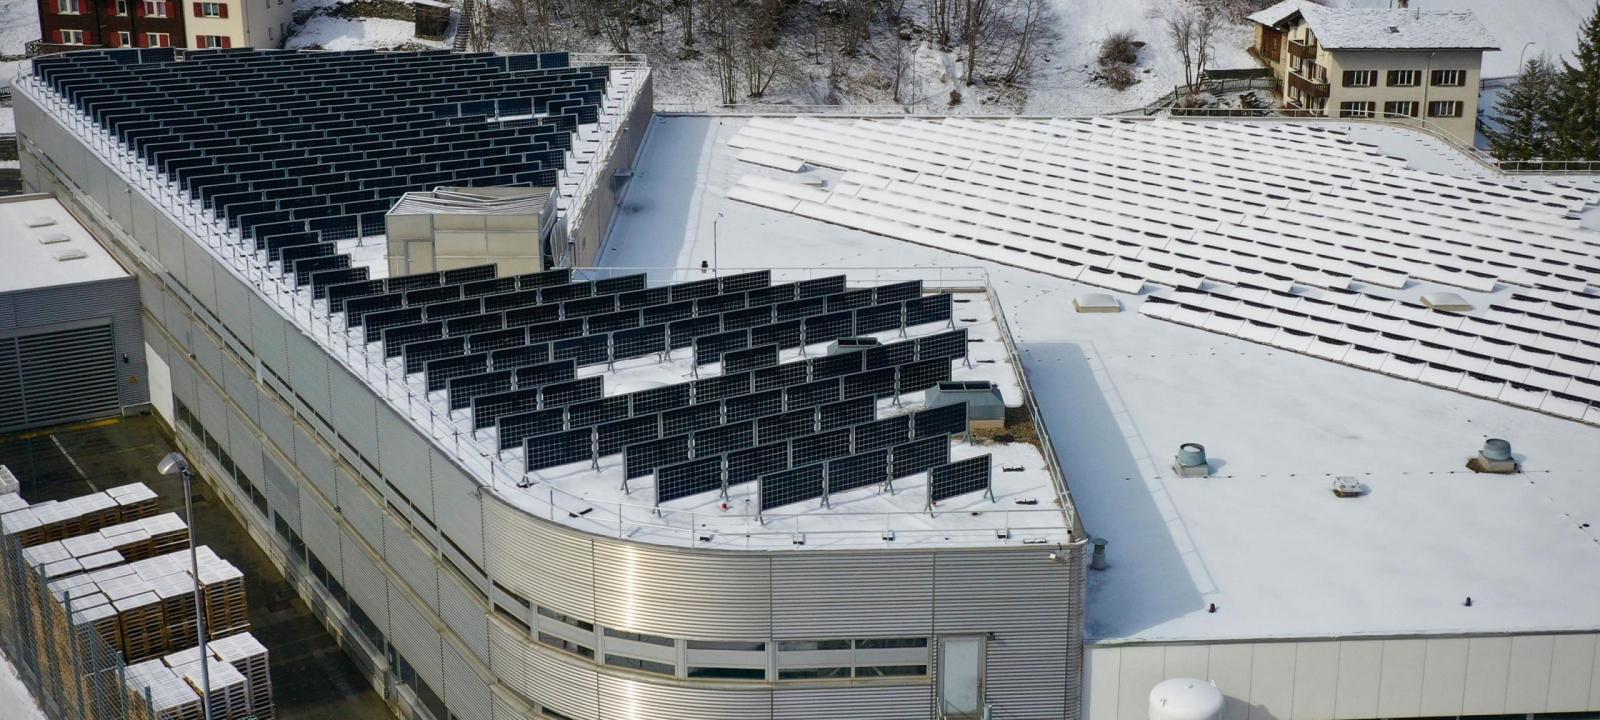 Dach mit Solaranlage im Winter